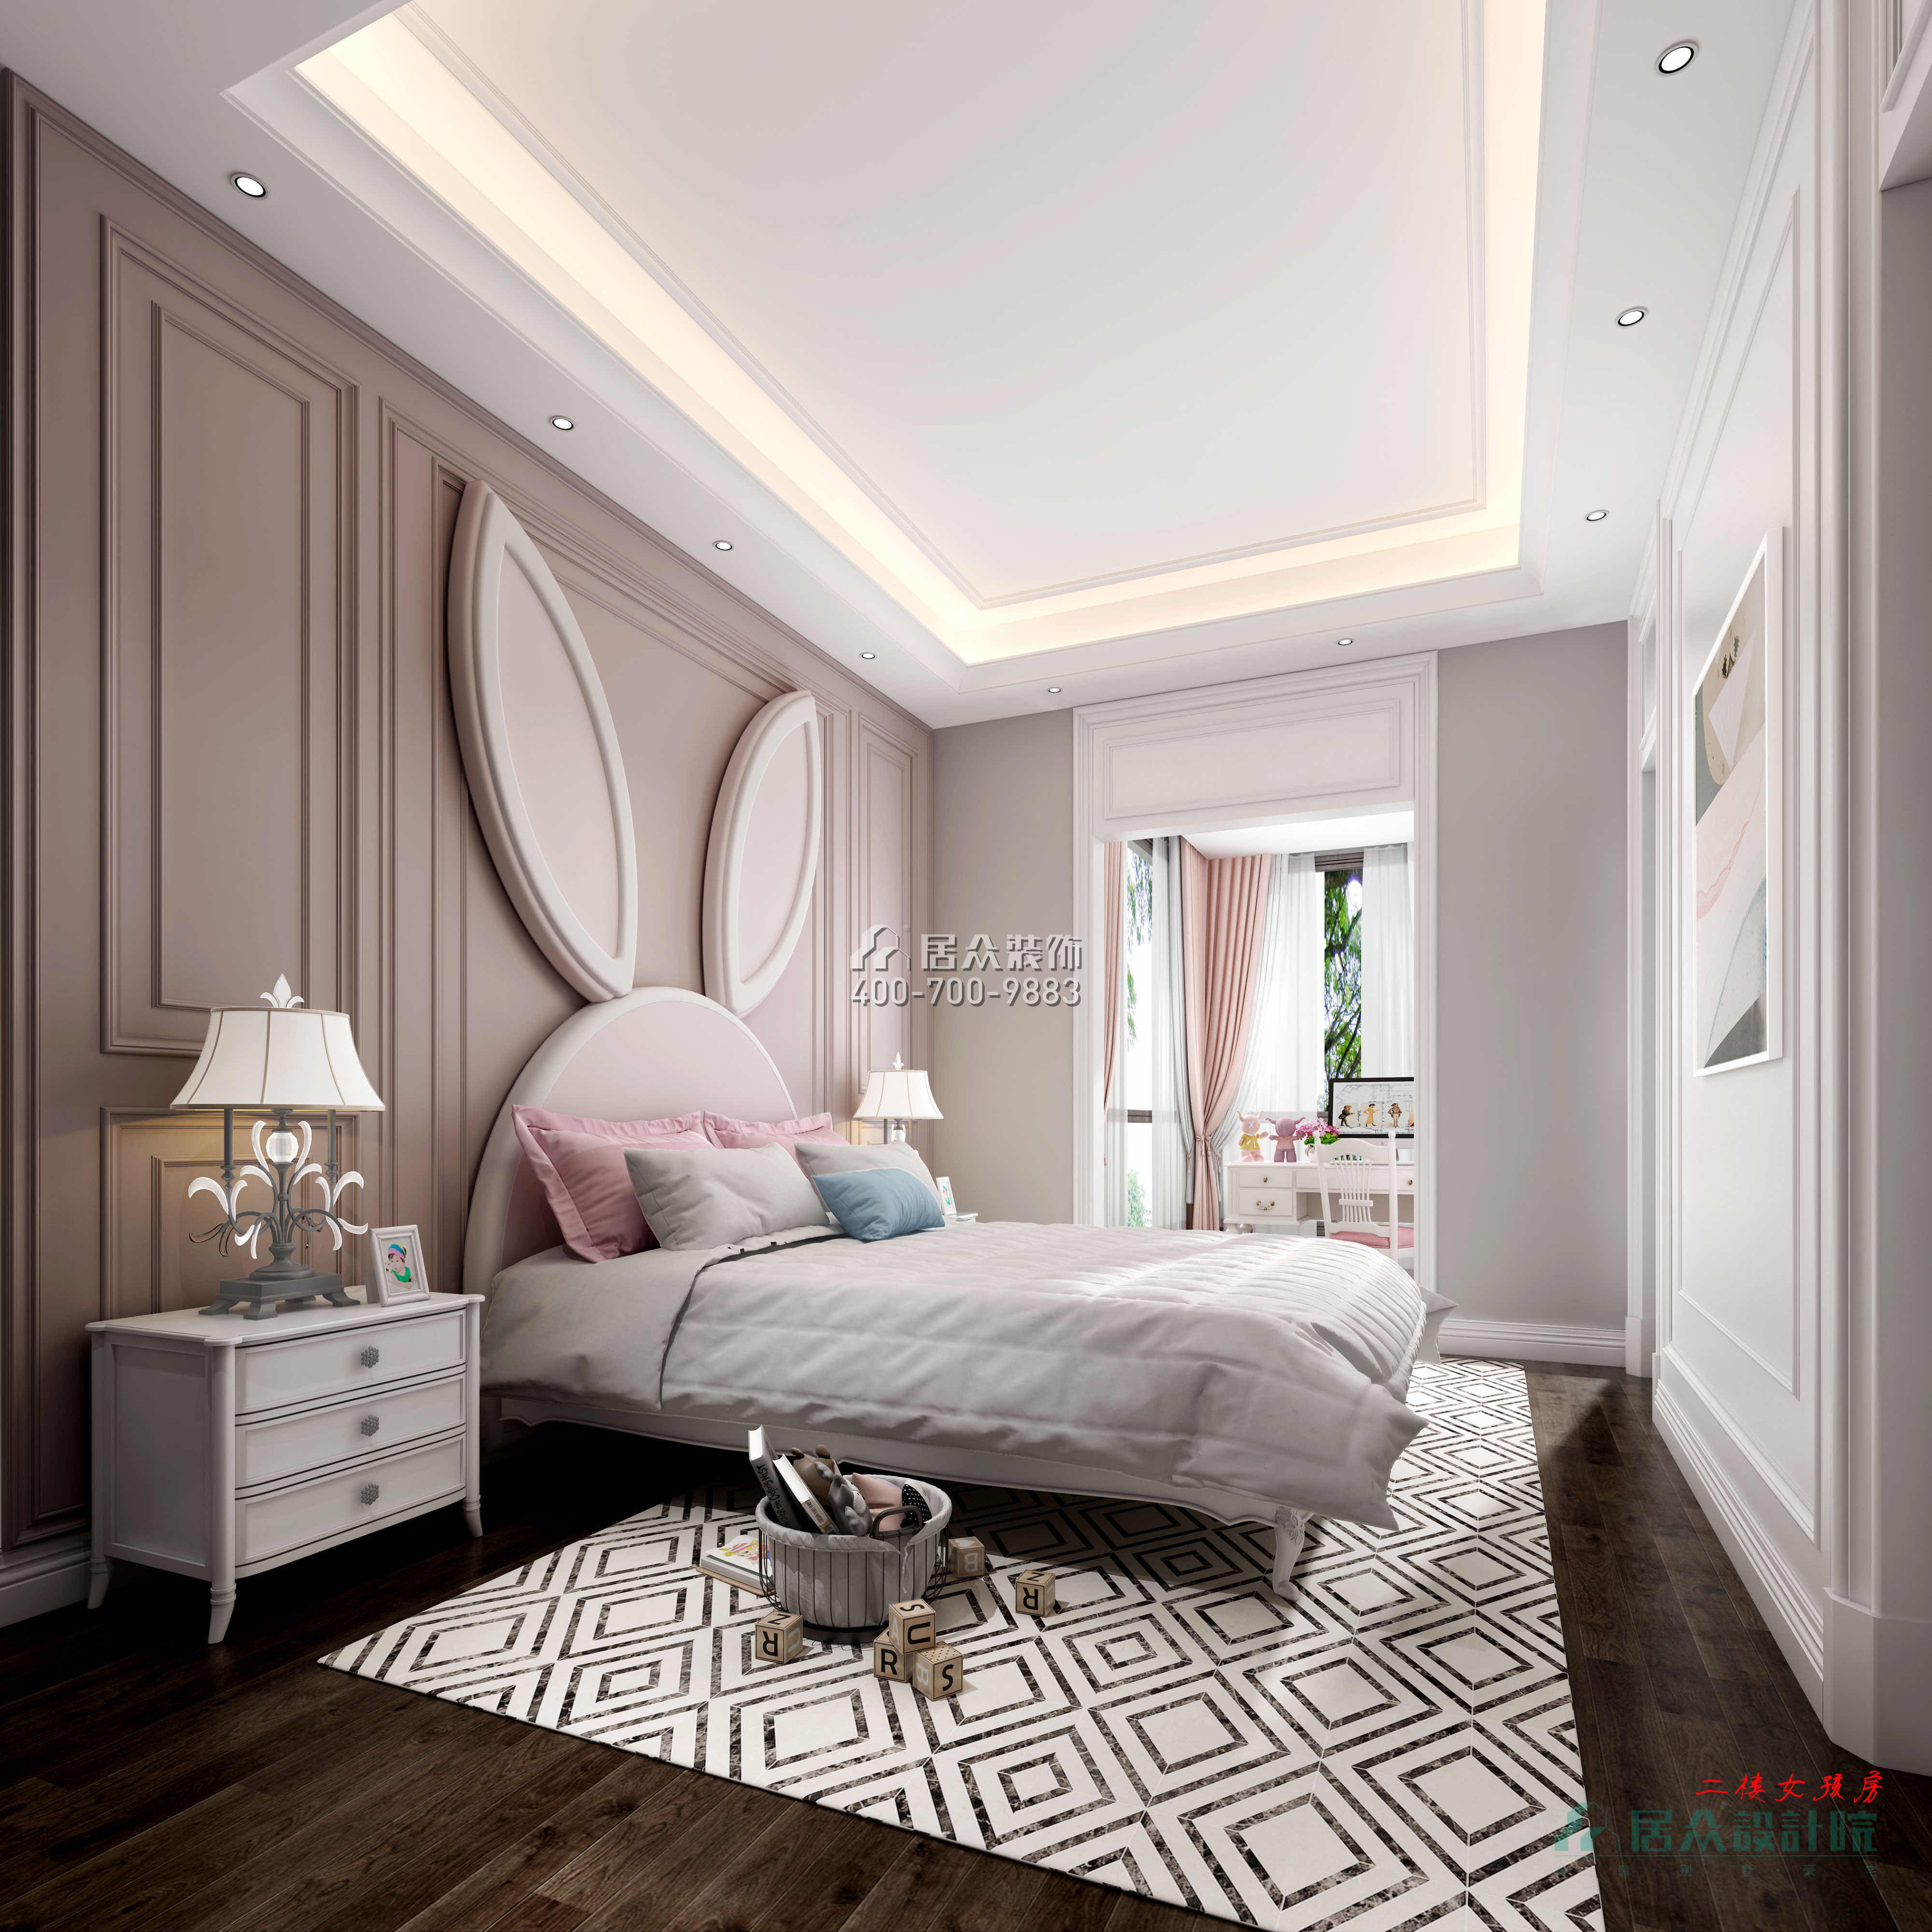 紫檀山700平方米现代简约风格别墅户型卧室装修效果图